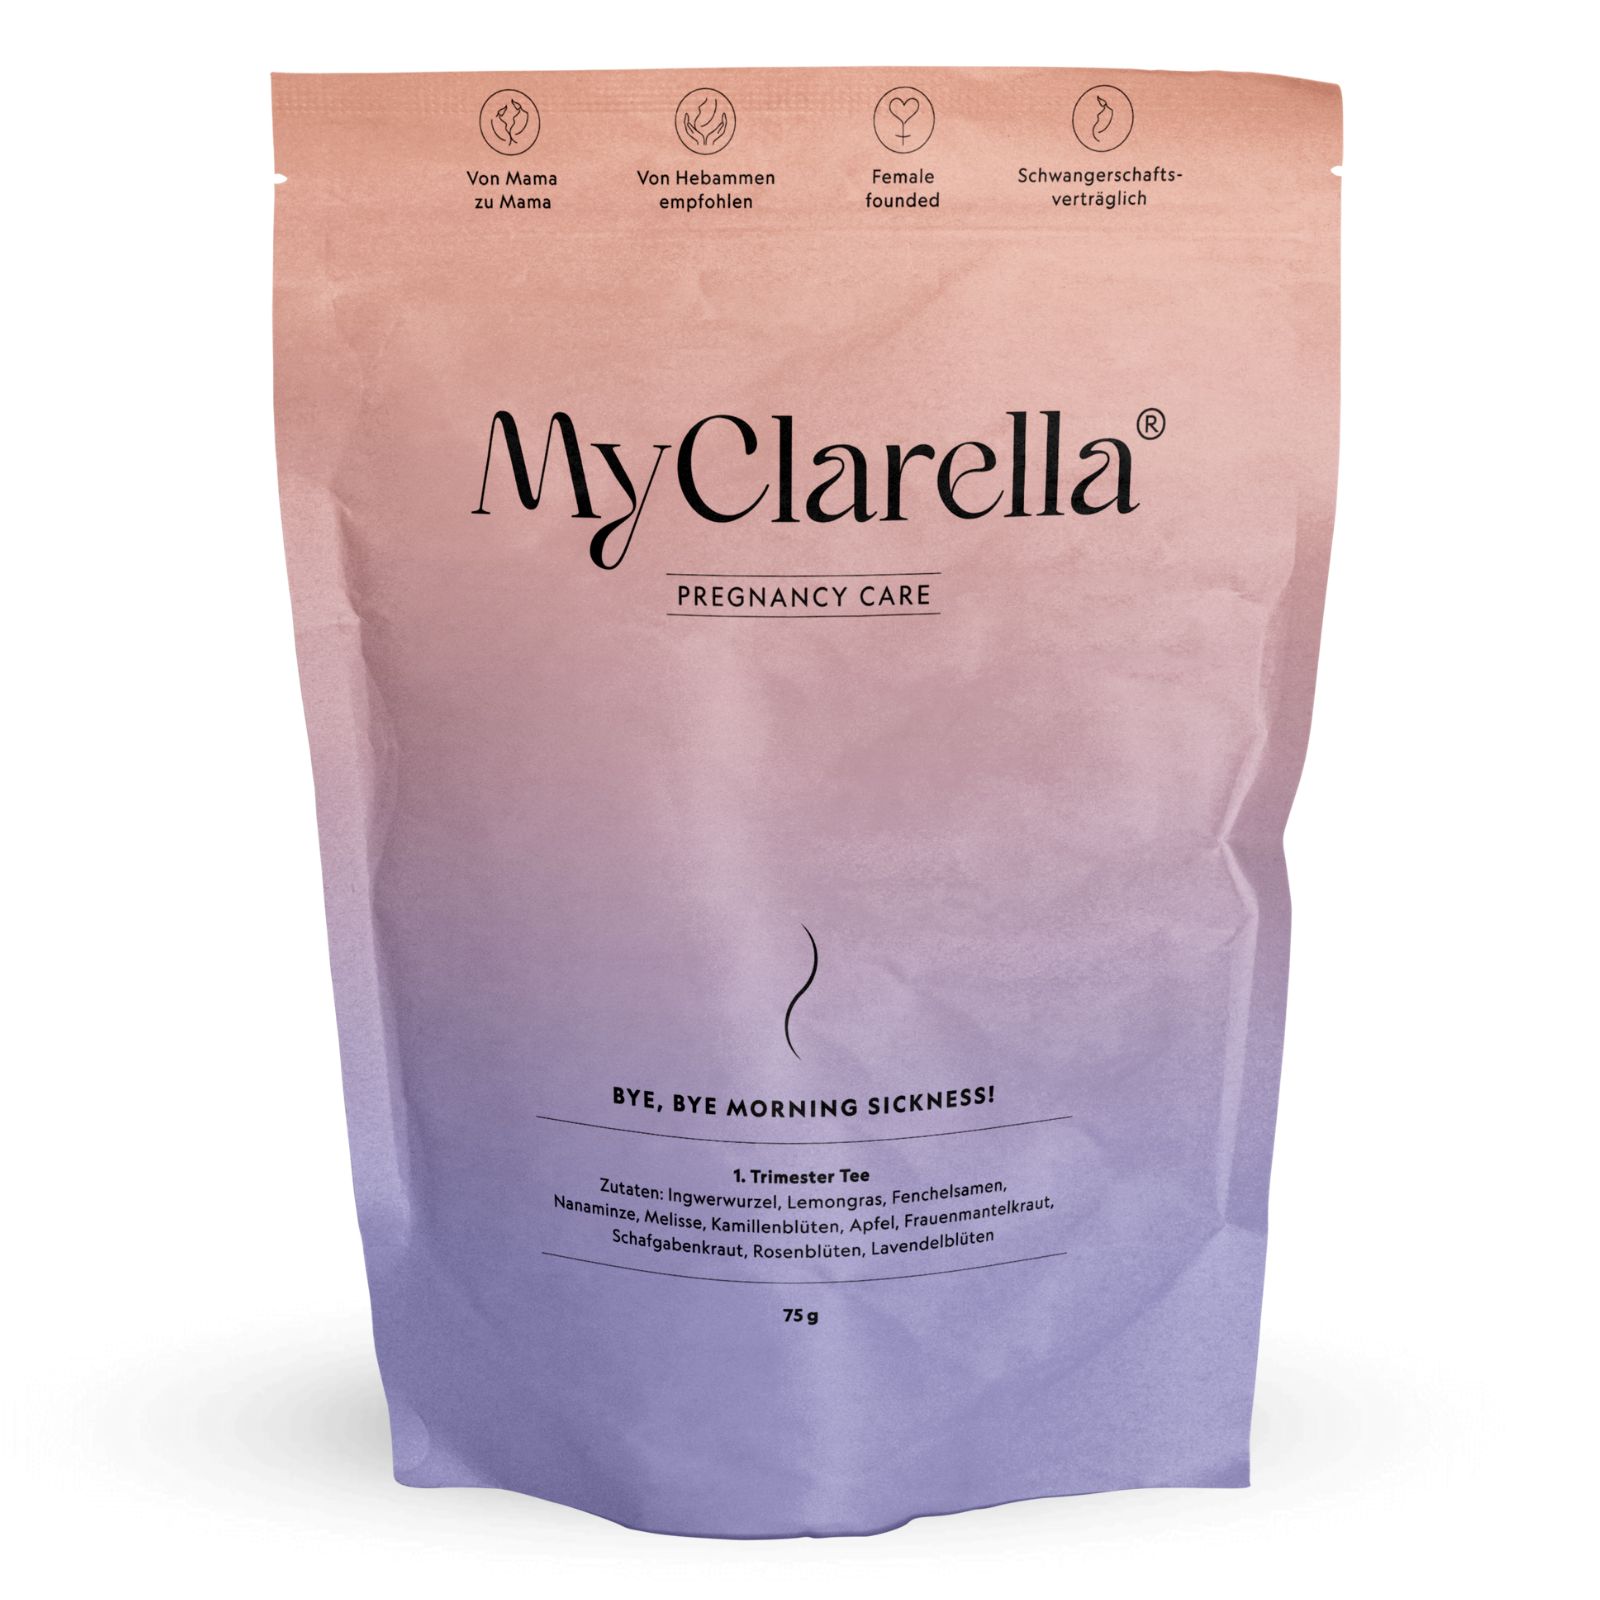 MyClarella 1. Trimester Tee